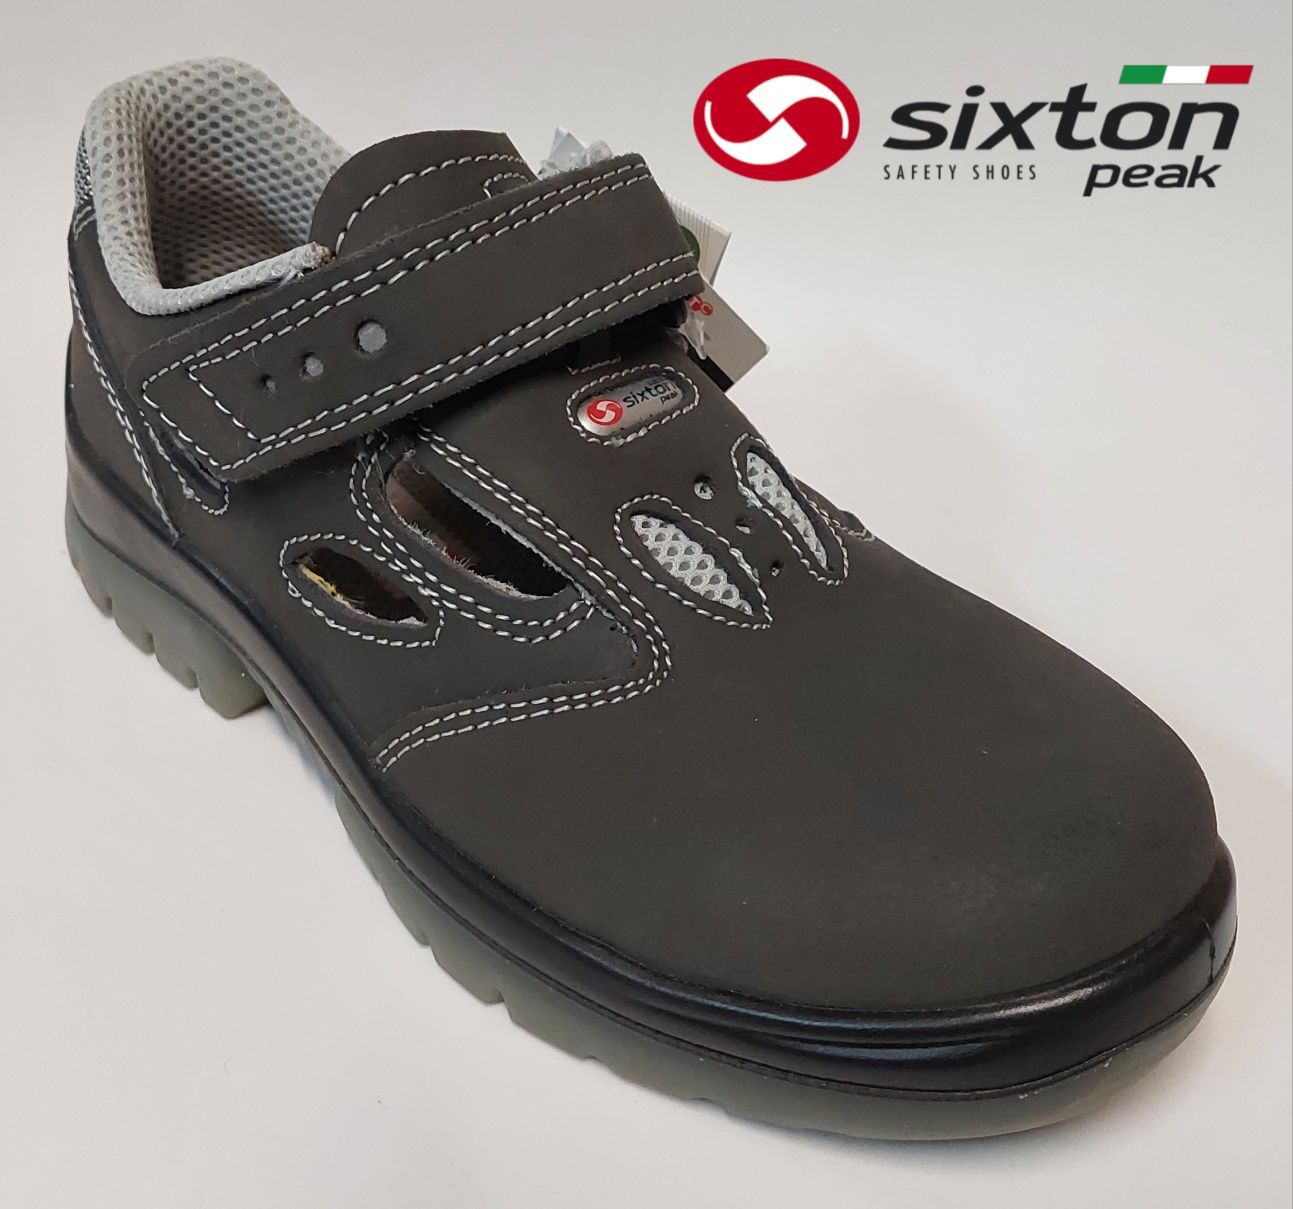 Buty ochronne Sixton Peak S1 roz.37 sandały robocze Made in Italy Nowe